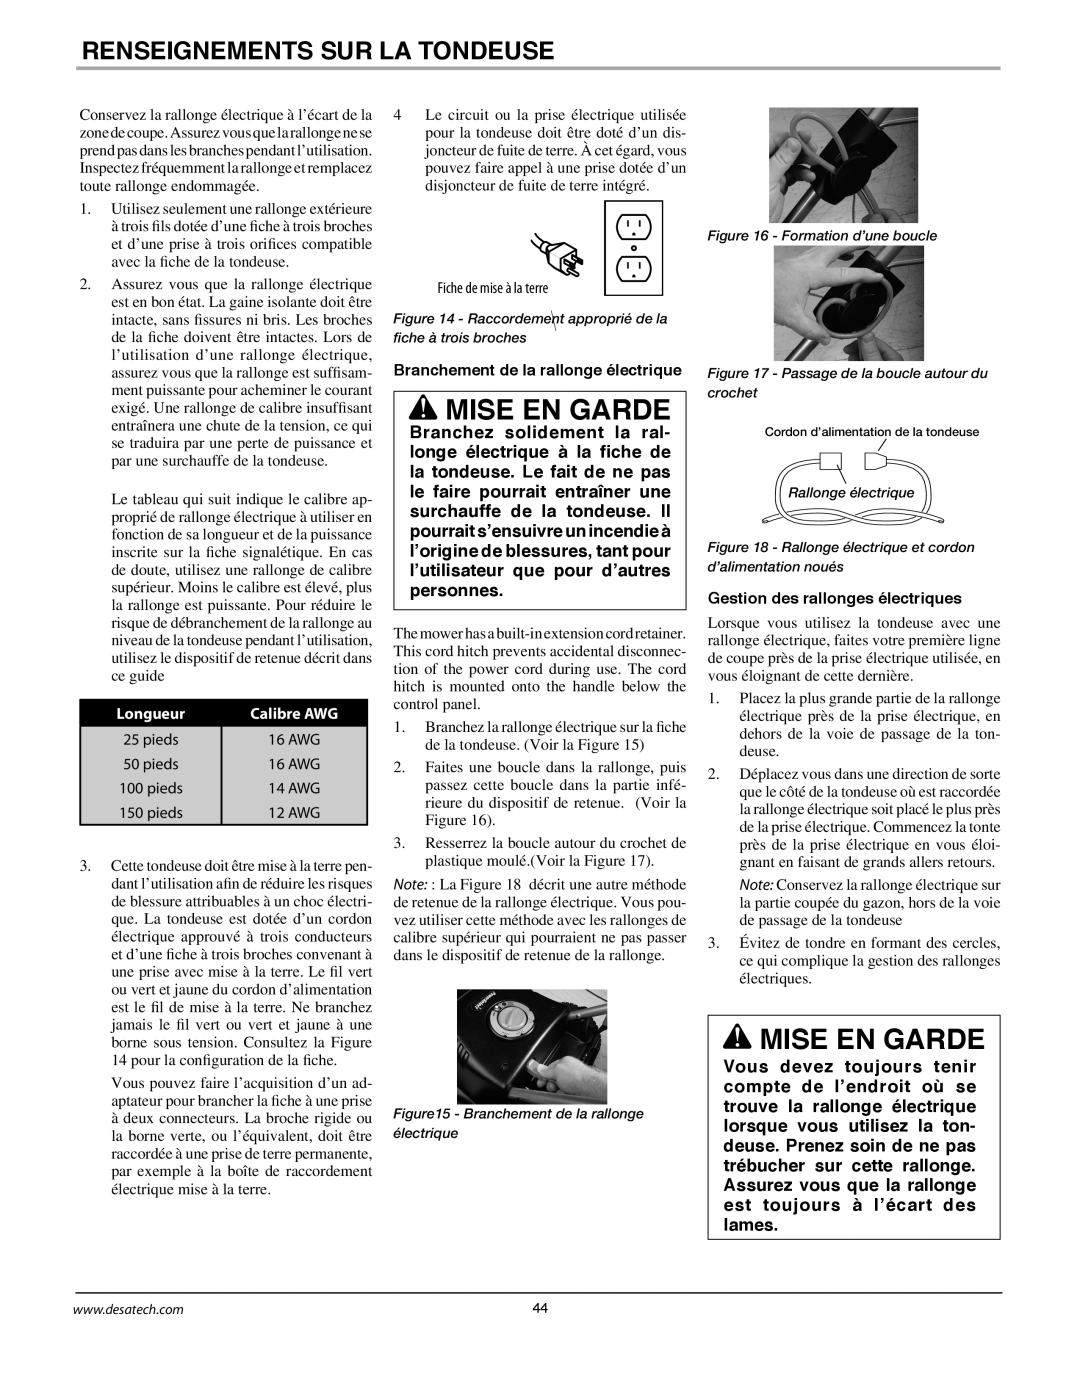 Remington Power Tools MPS6017A manual Mise En Garde, Renseignements Sur La Tondeuse, Longueur, Calibre AWG 